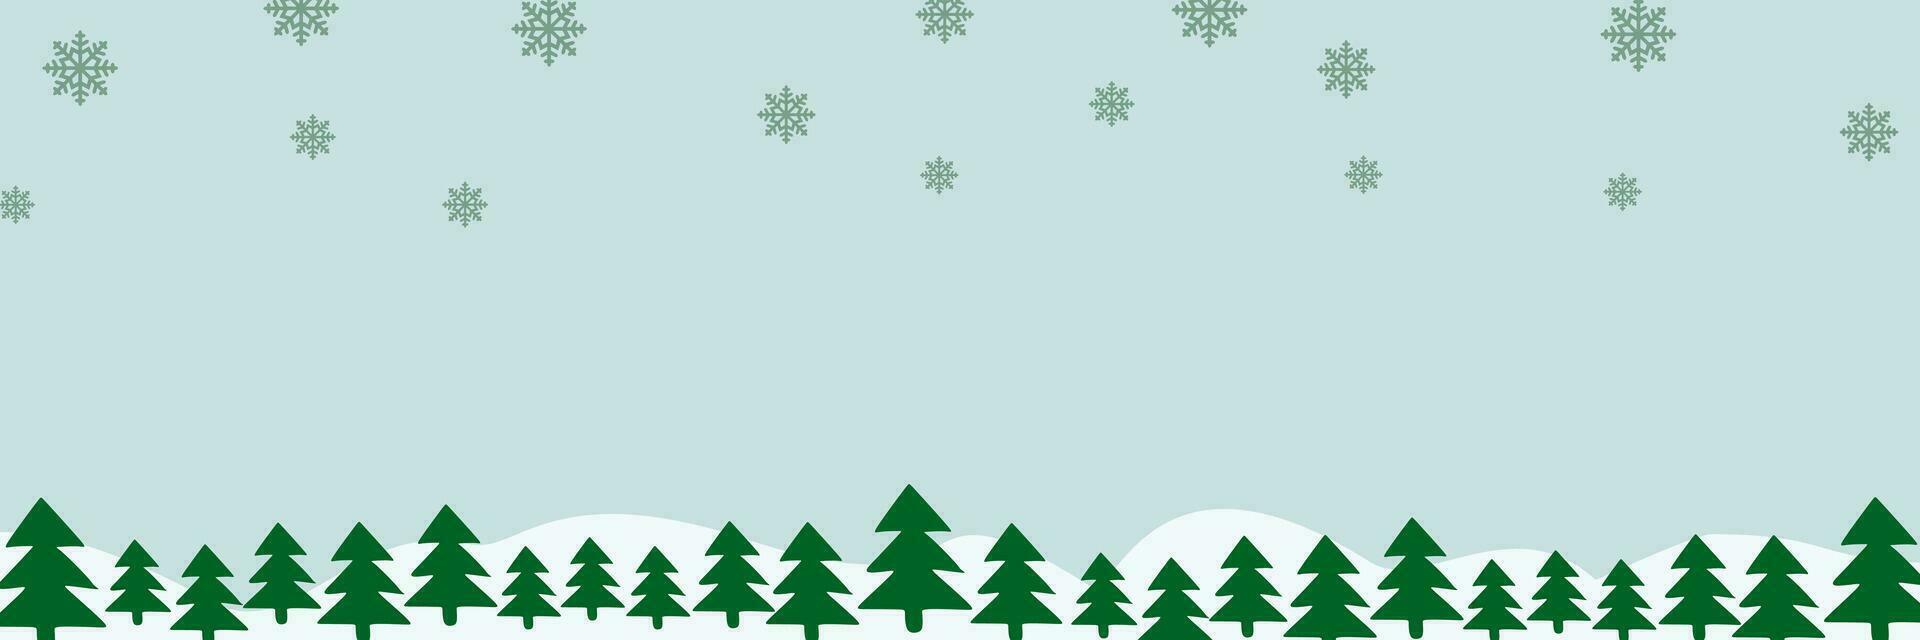 Rand mit Grün Tanne Bäume, fallen Schneeflocken, Schneeverwehungen mit Copyspace zum Text. Kiefer, Weihnachten immergrün Pflanzen Banner. Vektor Weihnachten Baum Girlande und Schnee driftet Muster. eben Hintergrund.